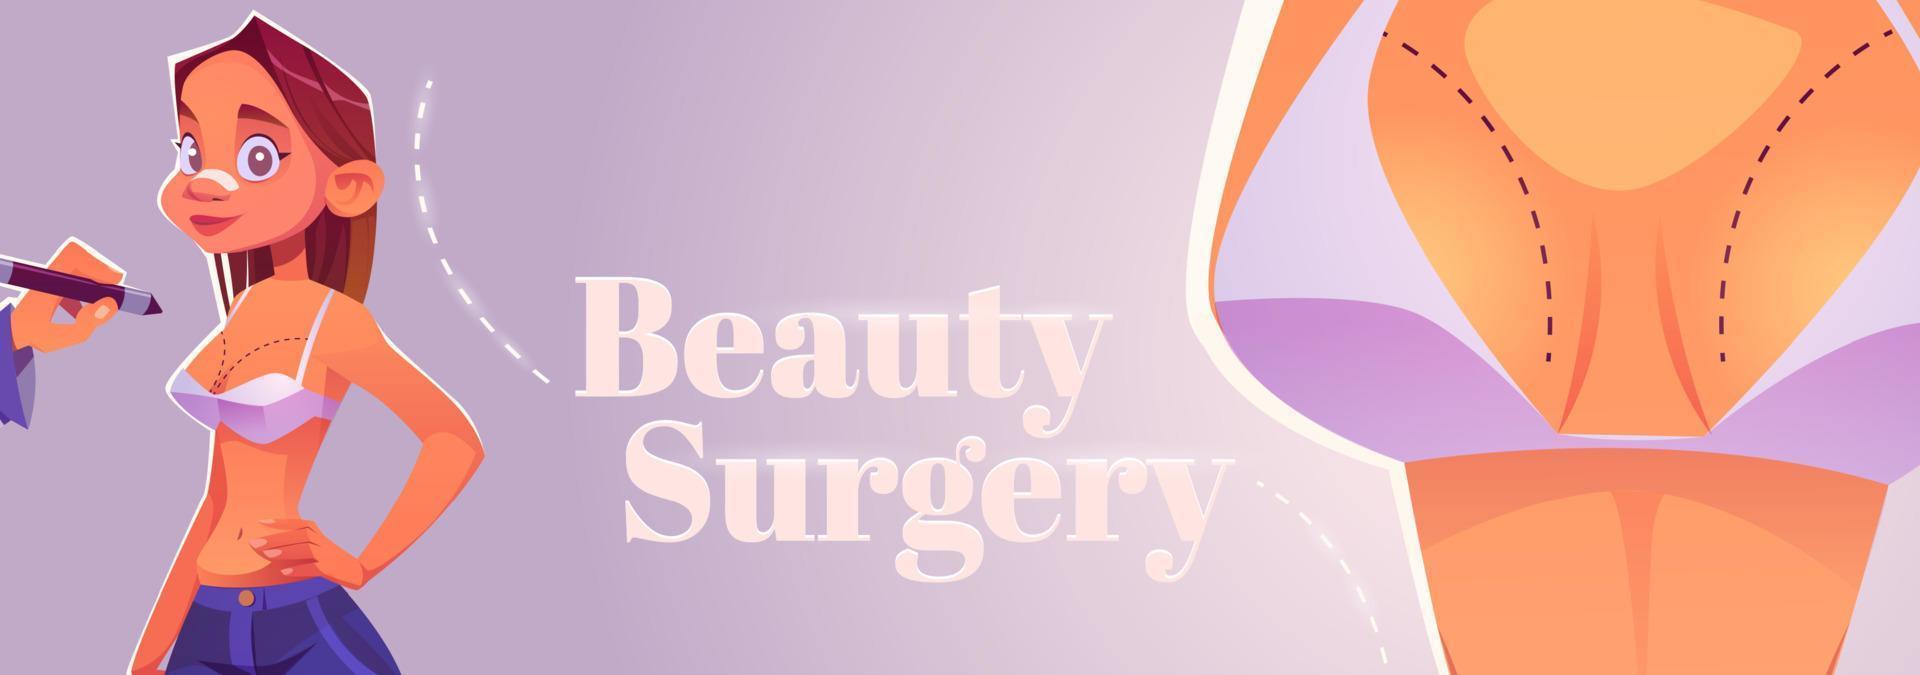 bannière de dessin animé de chirurgie de beauté, procédure cosmétique vecteur